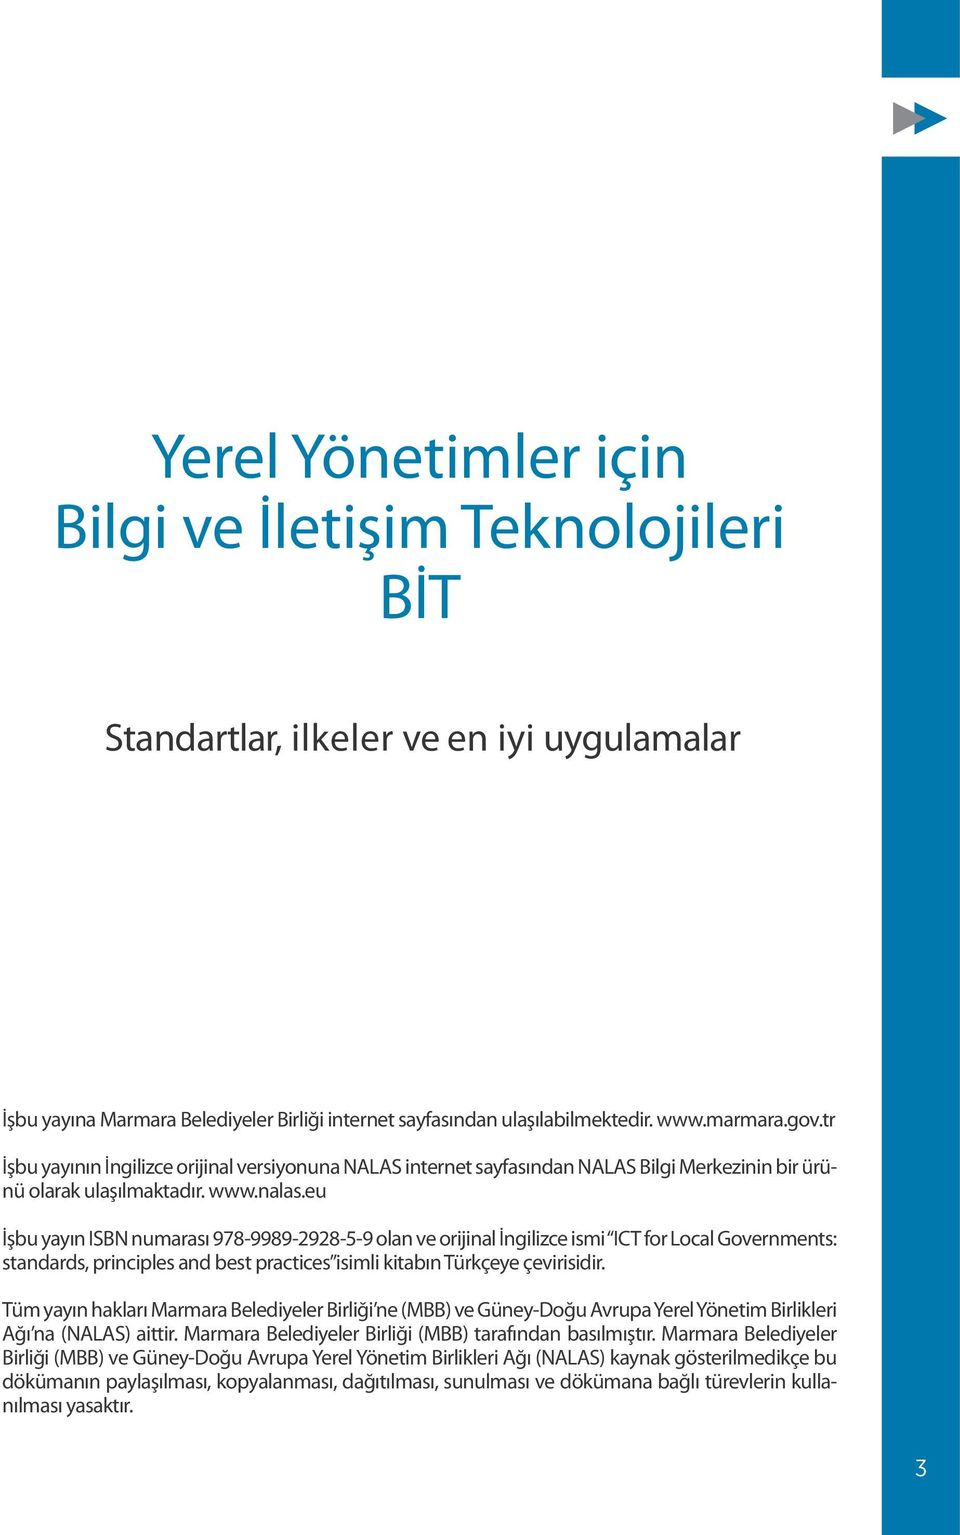 eu İşbu yayın ISBN numarası 978-9989-2928-5-9 olan ve orijinal İngilizce ismi ICT for Local Governments: standards, principles and best practices isimli kitabın Türkçeye çevirisidir.